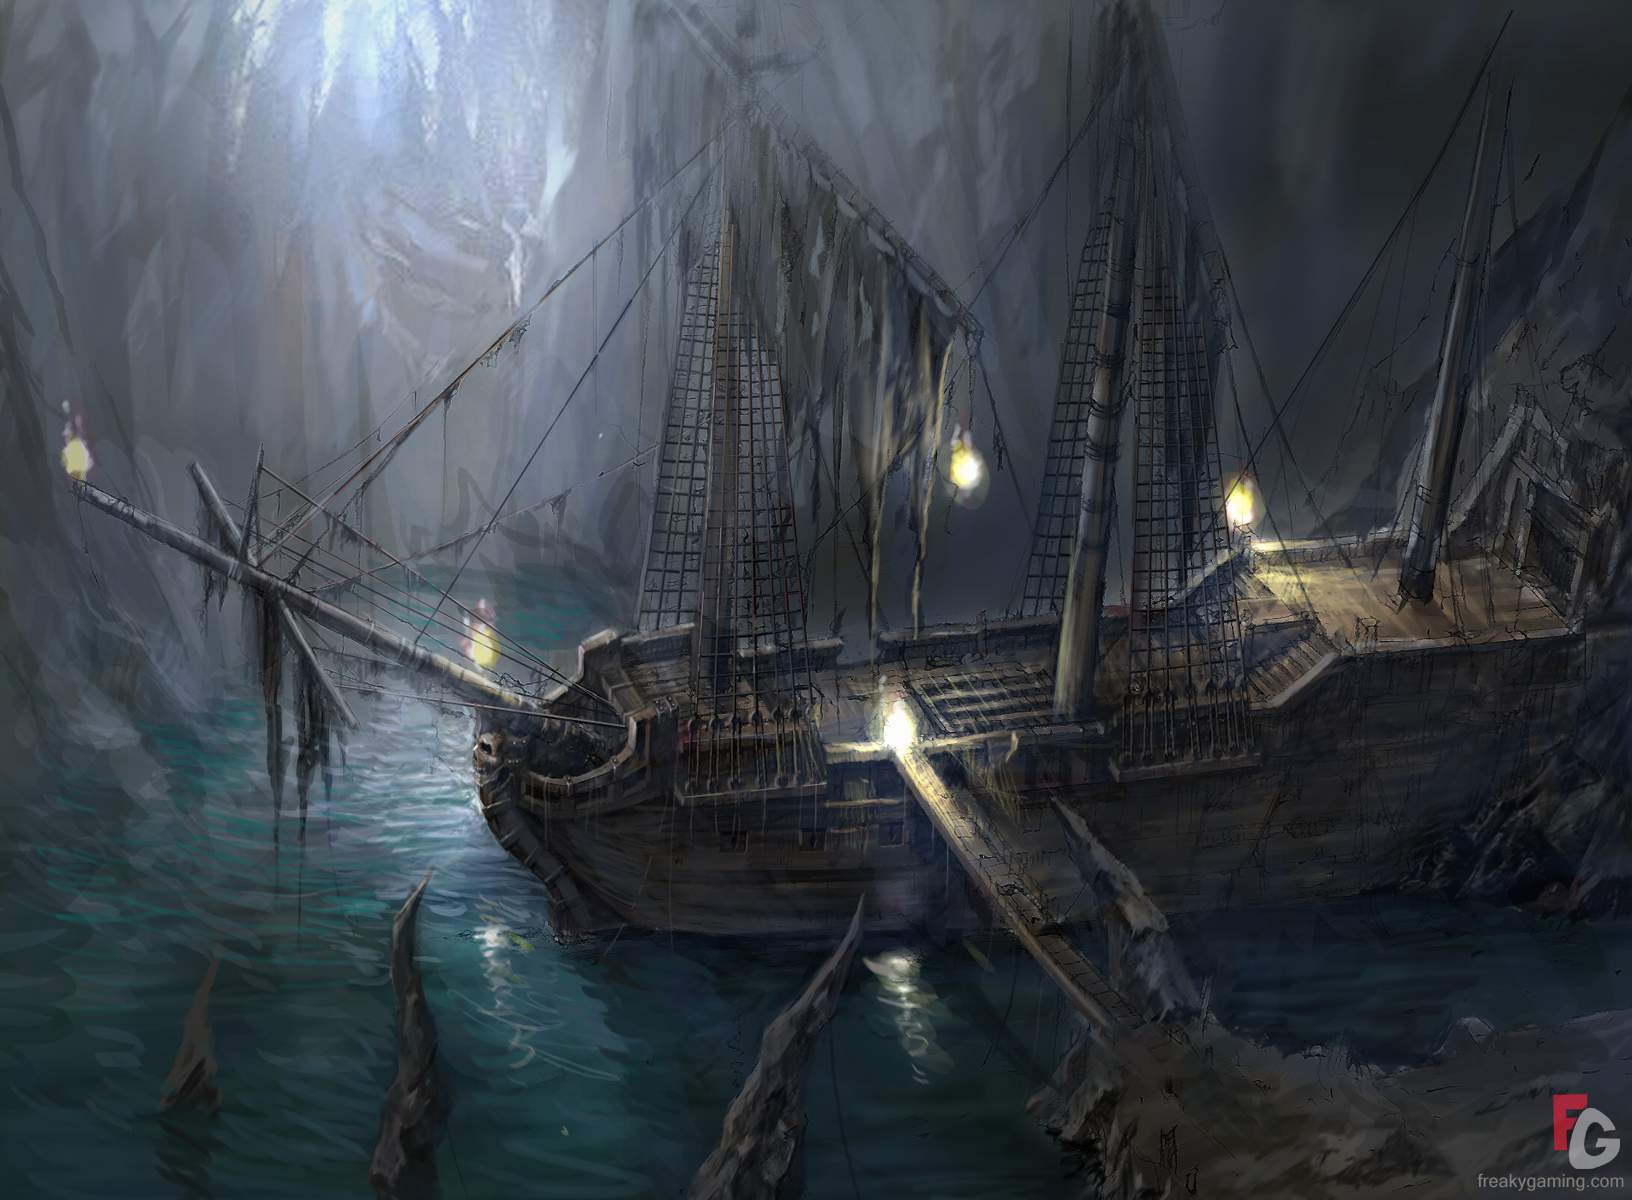 Dark's Ship